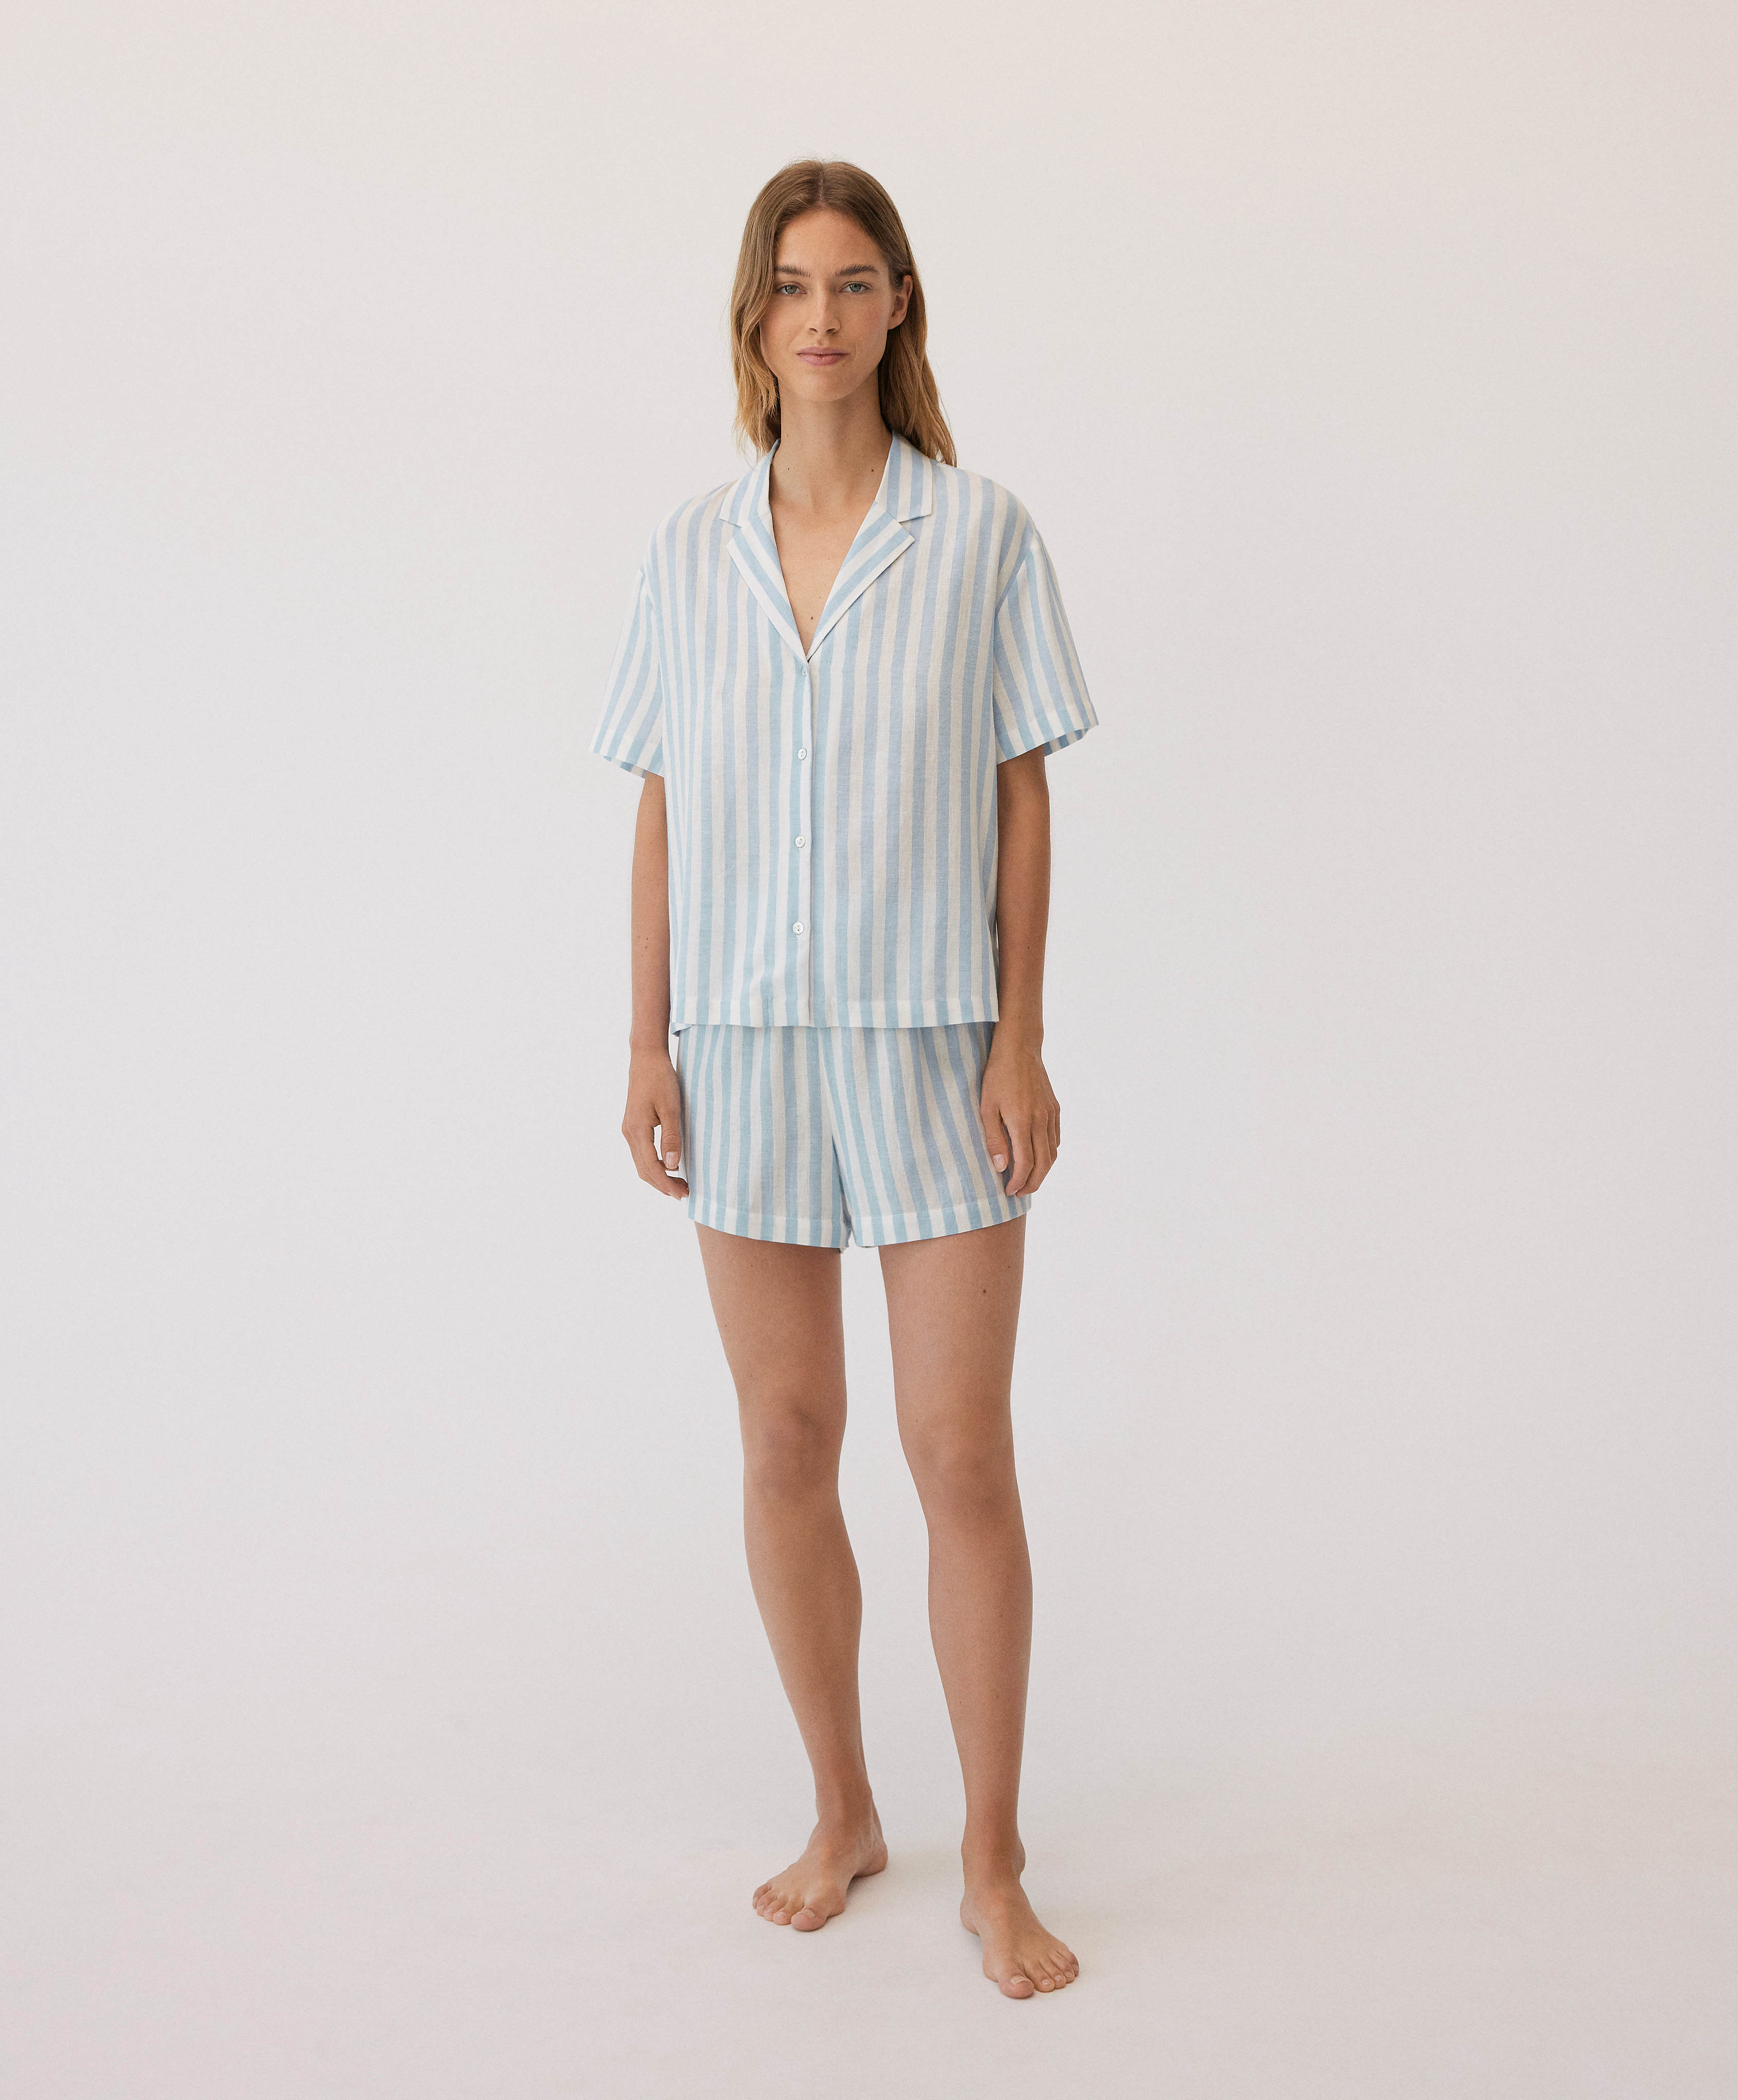 Zweiteiliger kurzer Hemdpyjama aus gestreiftem Baumwollstoff